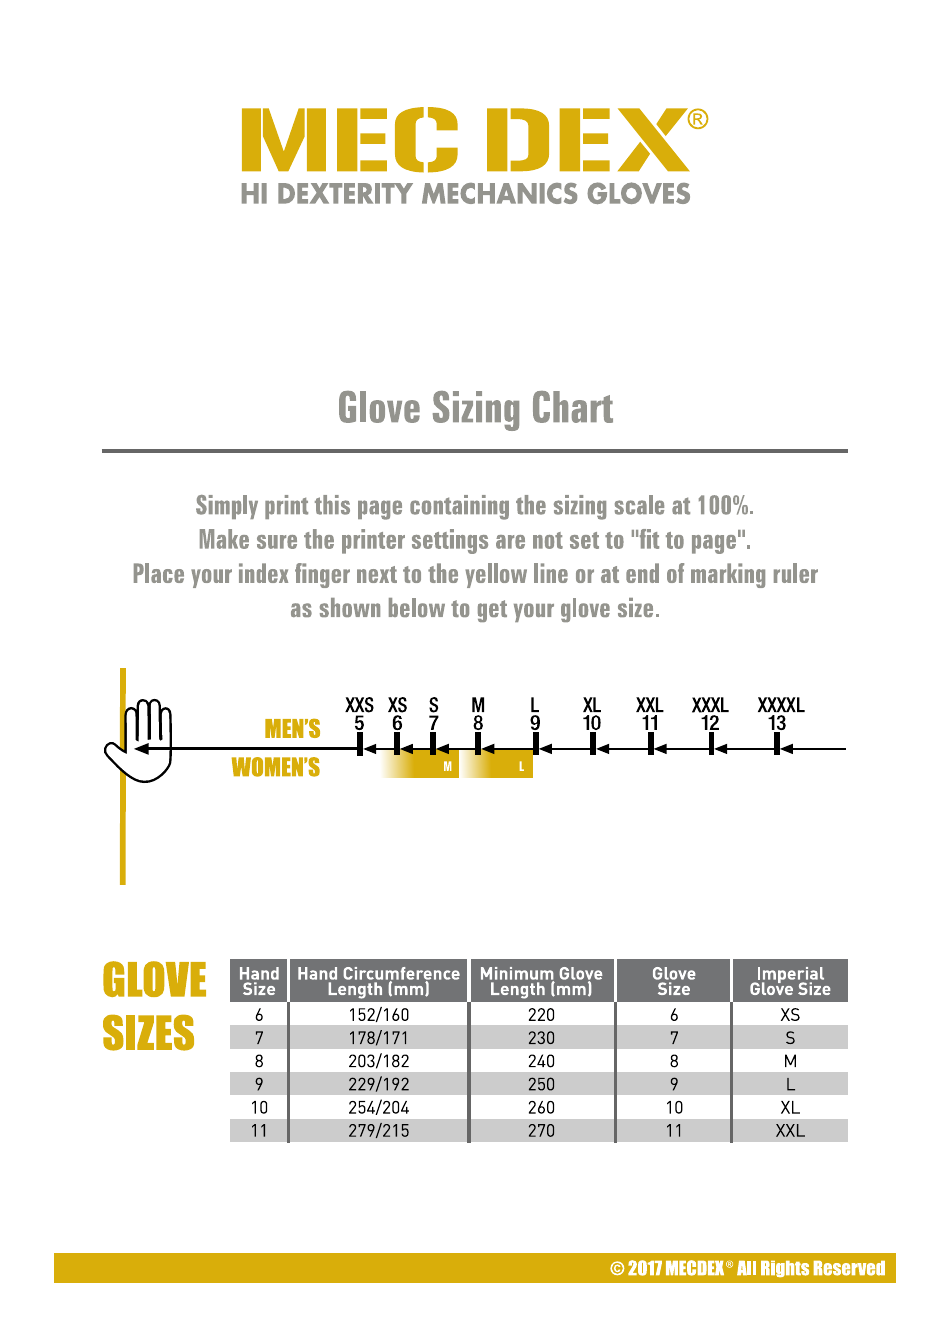 Mecdex Glove Size Chart